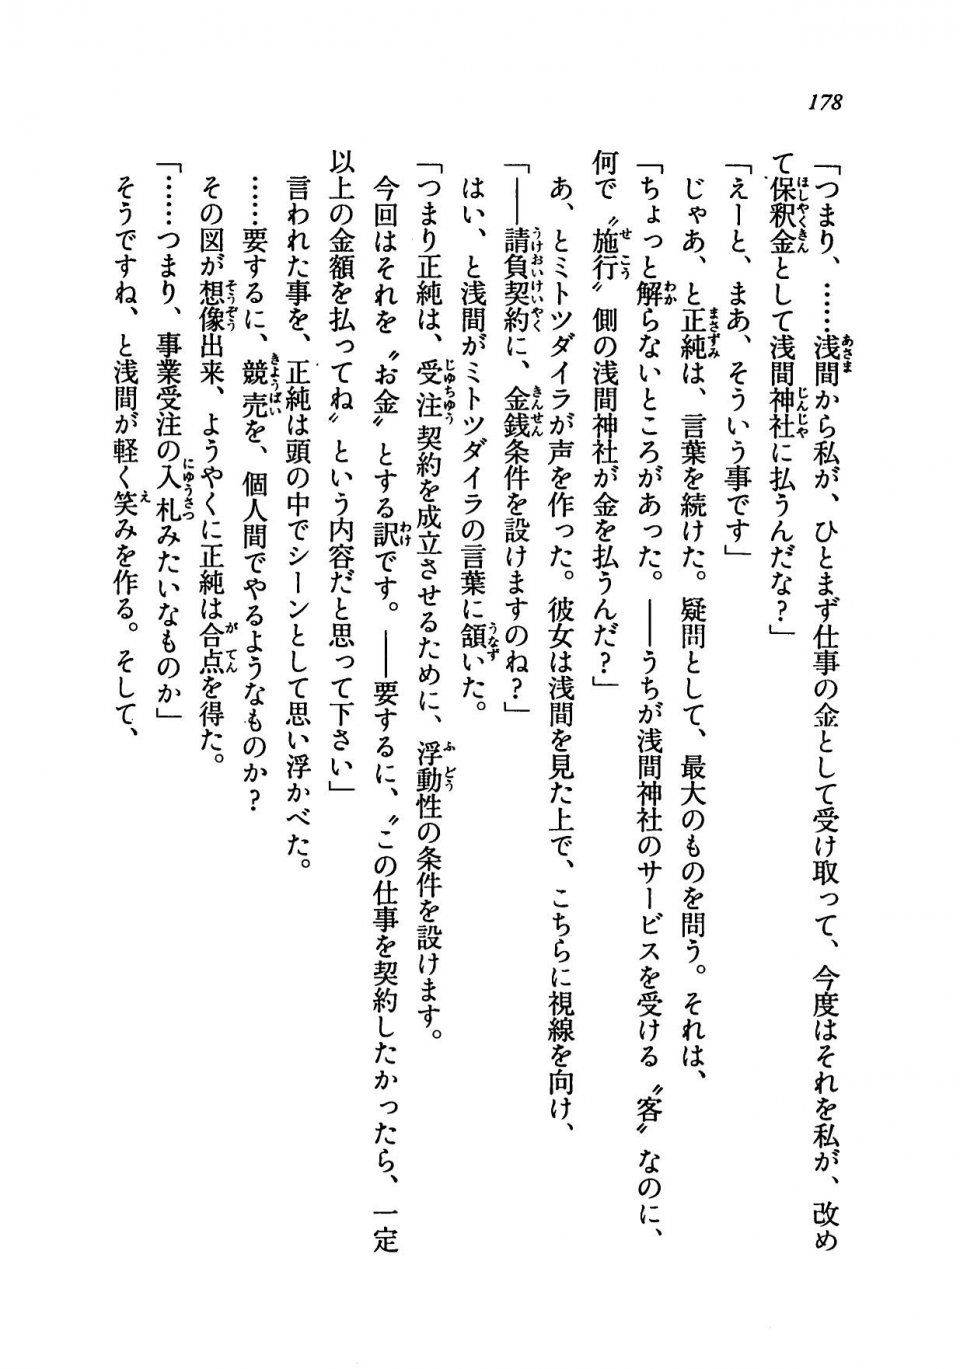 Kyoukai Senjou no Horizon LN Vol 19(8A) - Photo #178